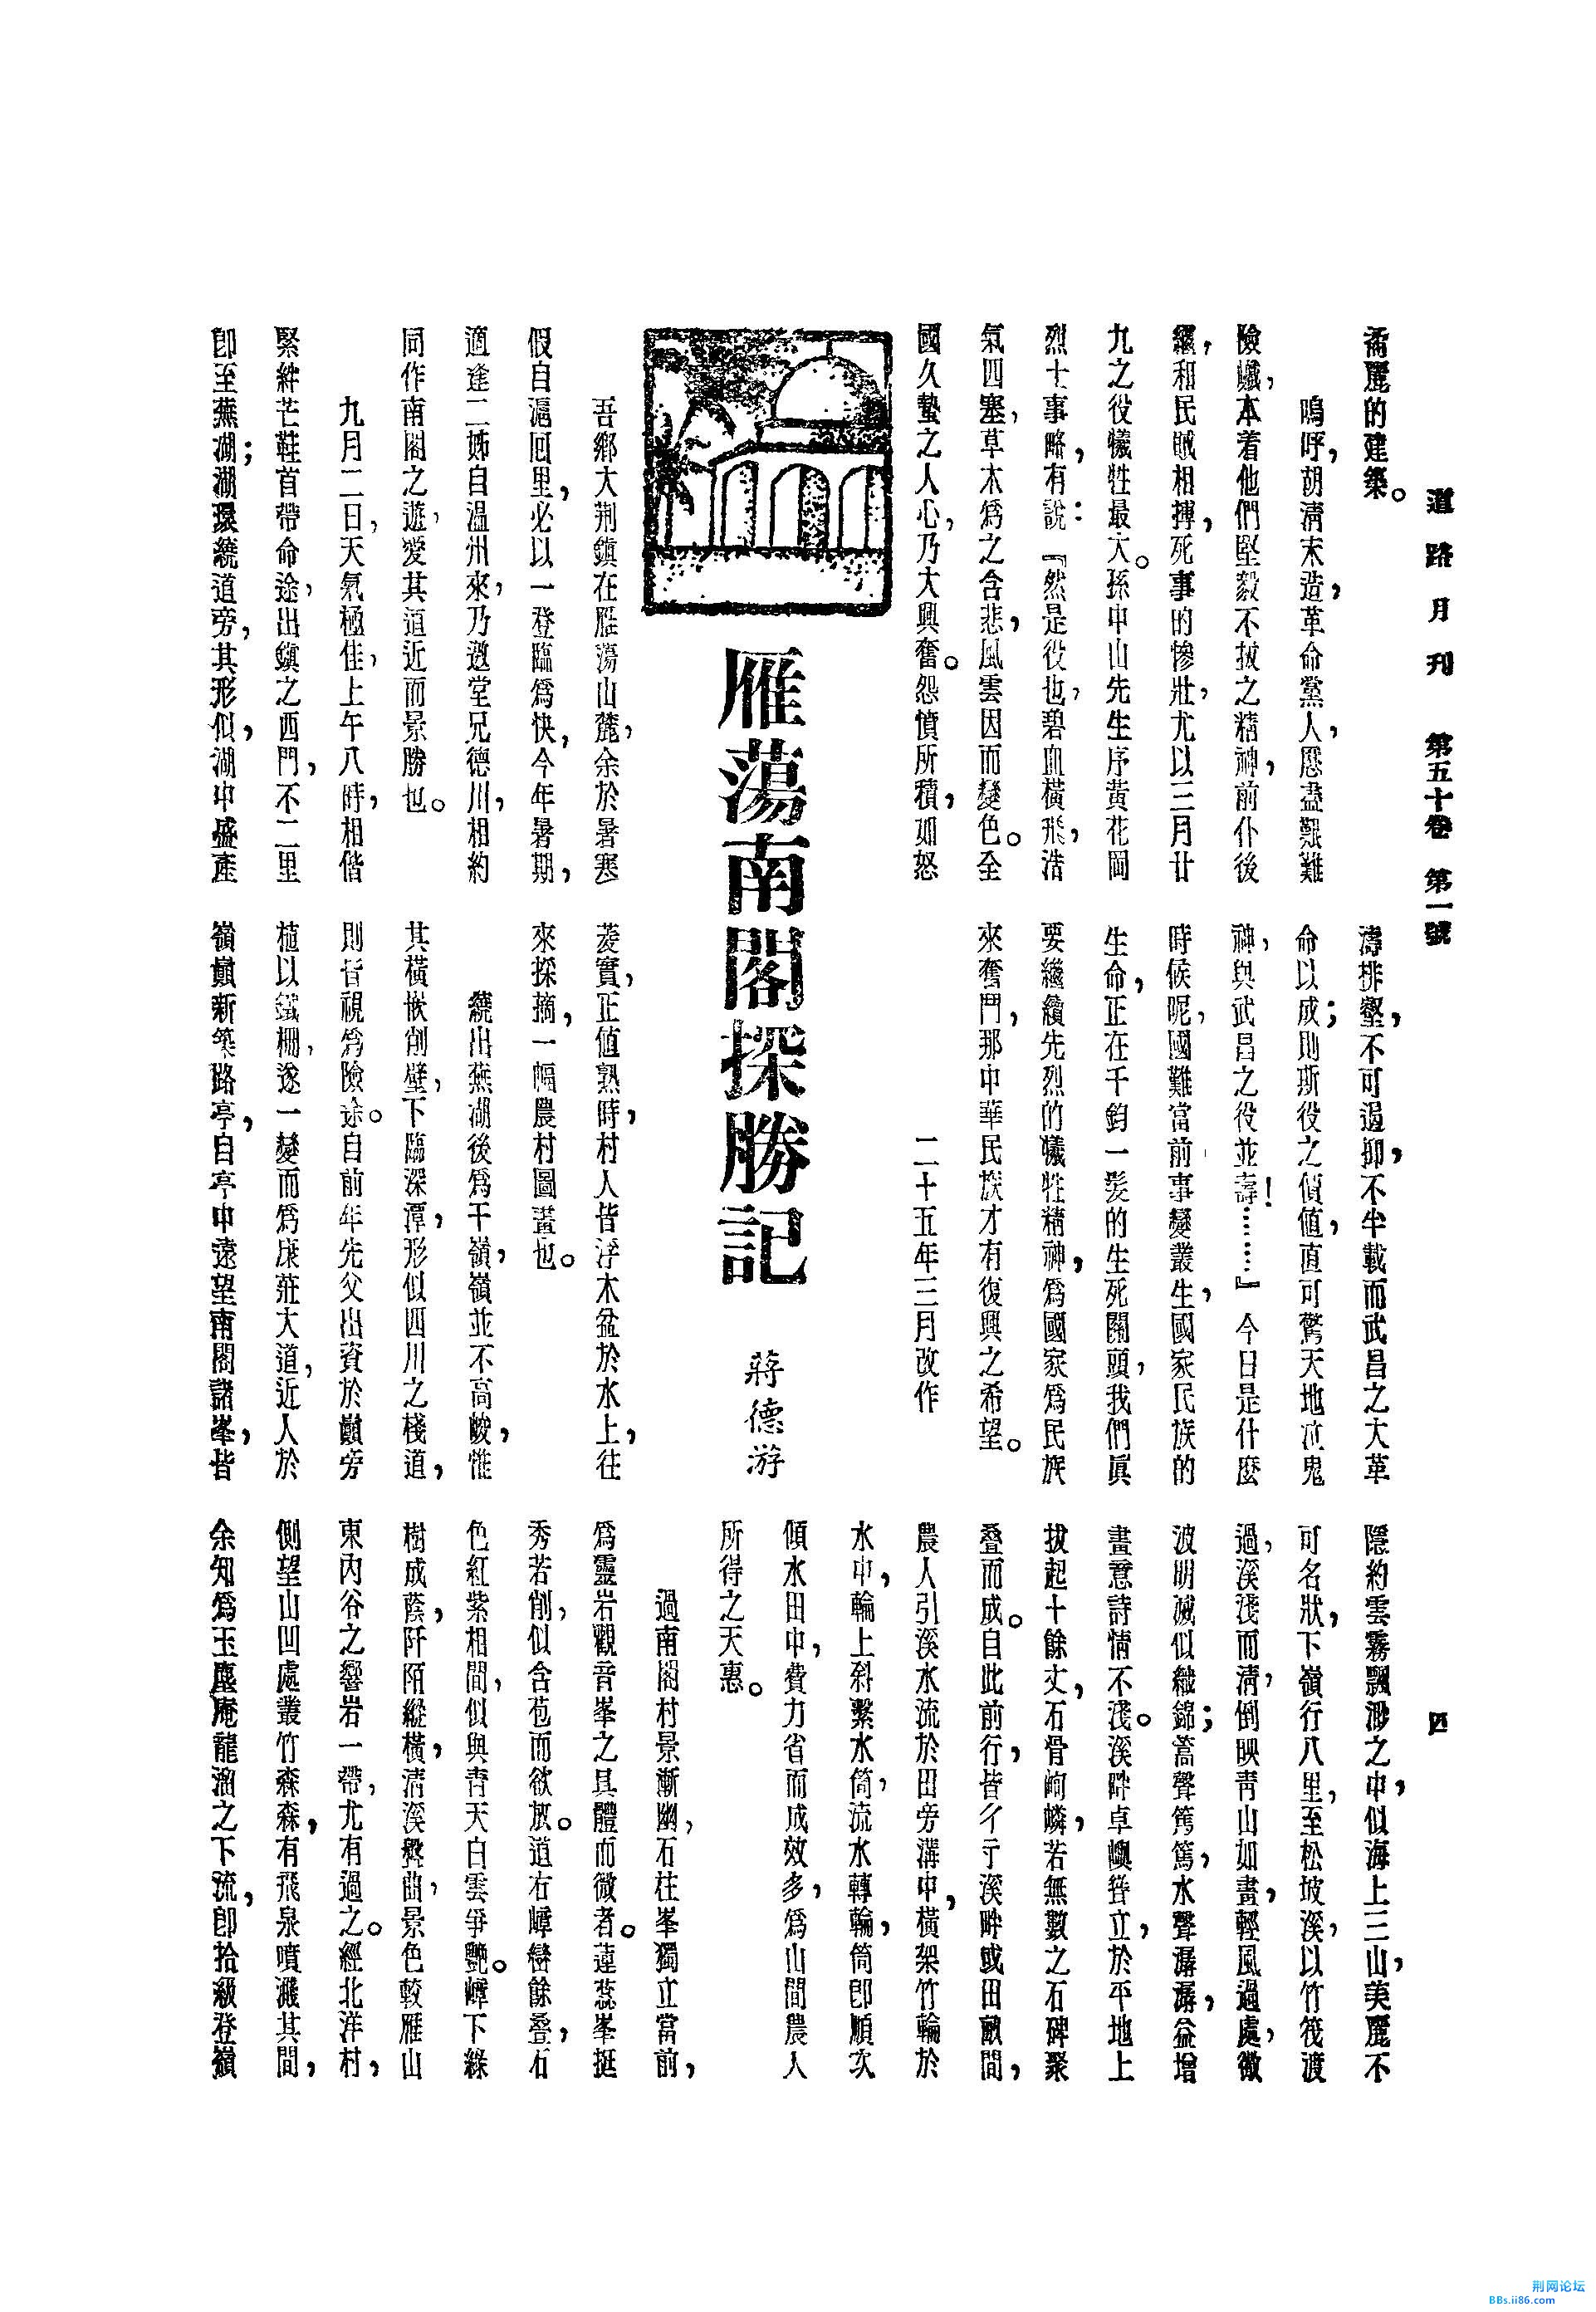 雁荡南阁探胜记[J].道路月刊,1936,(第1期)_页面_1.jpg